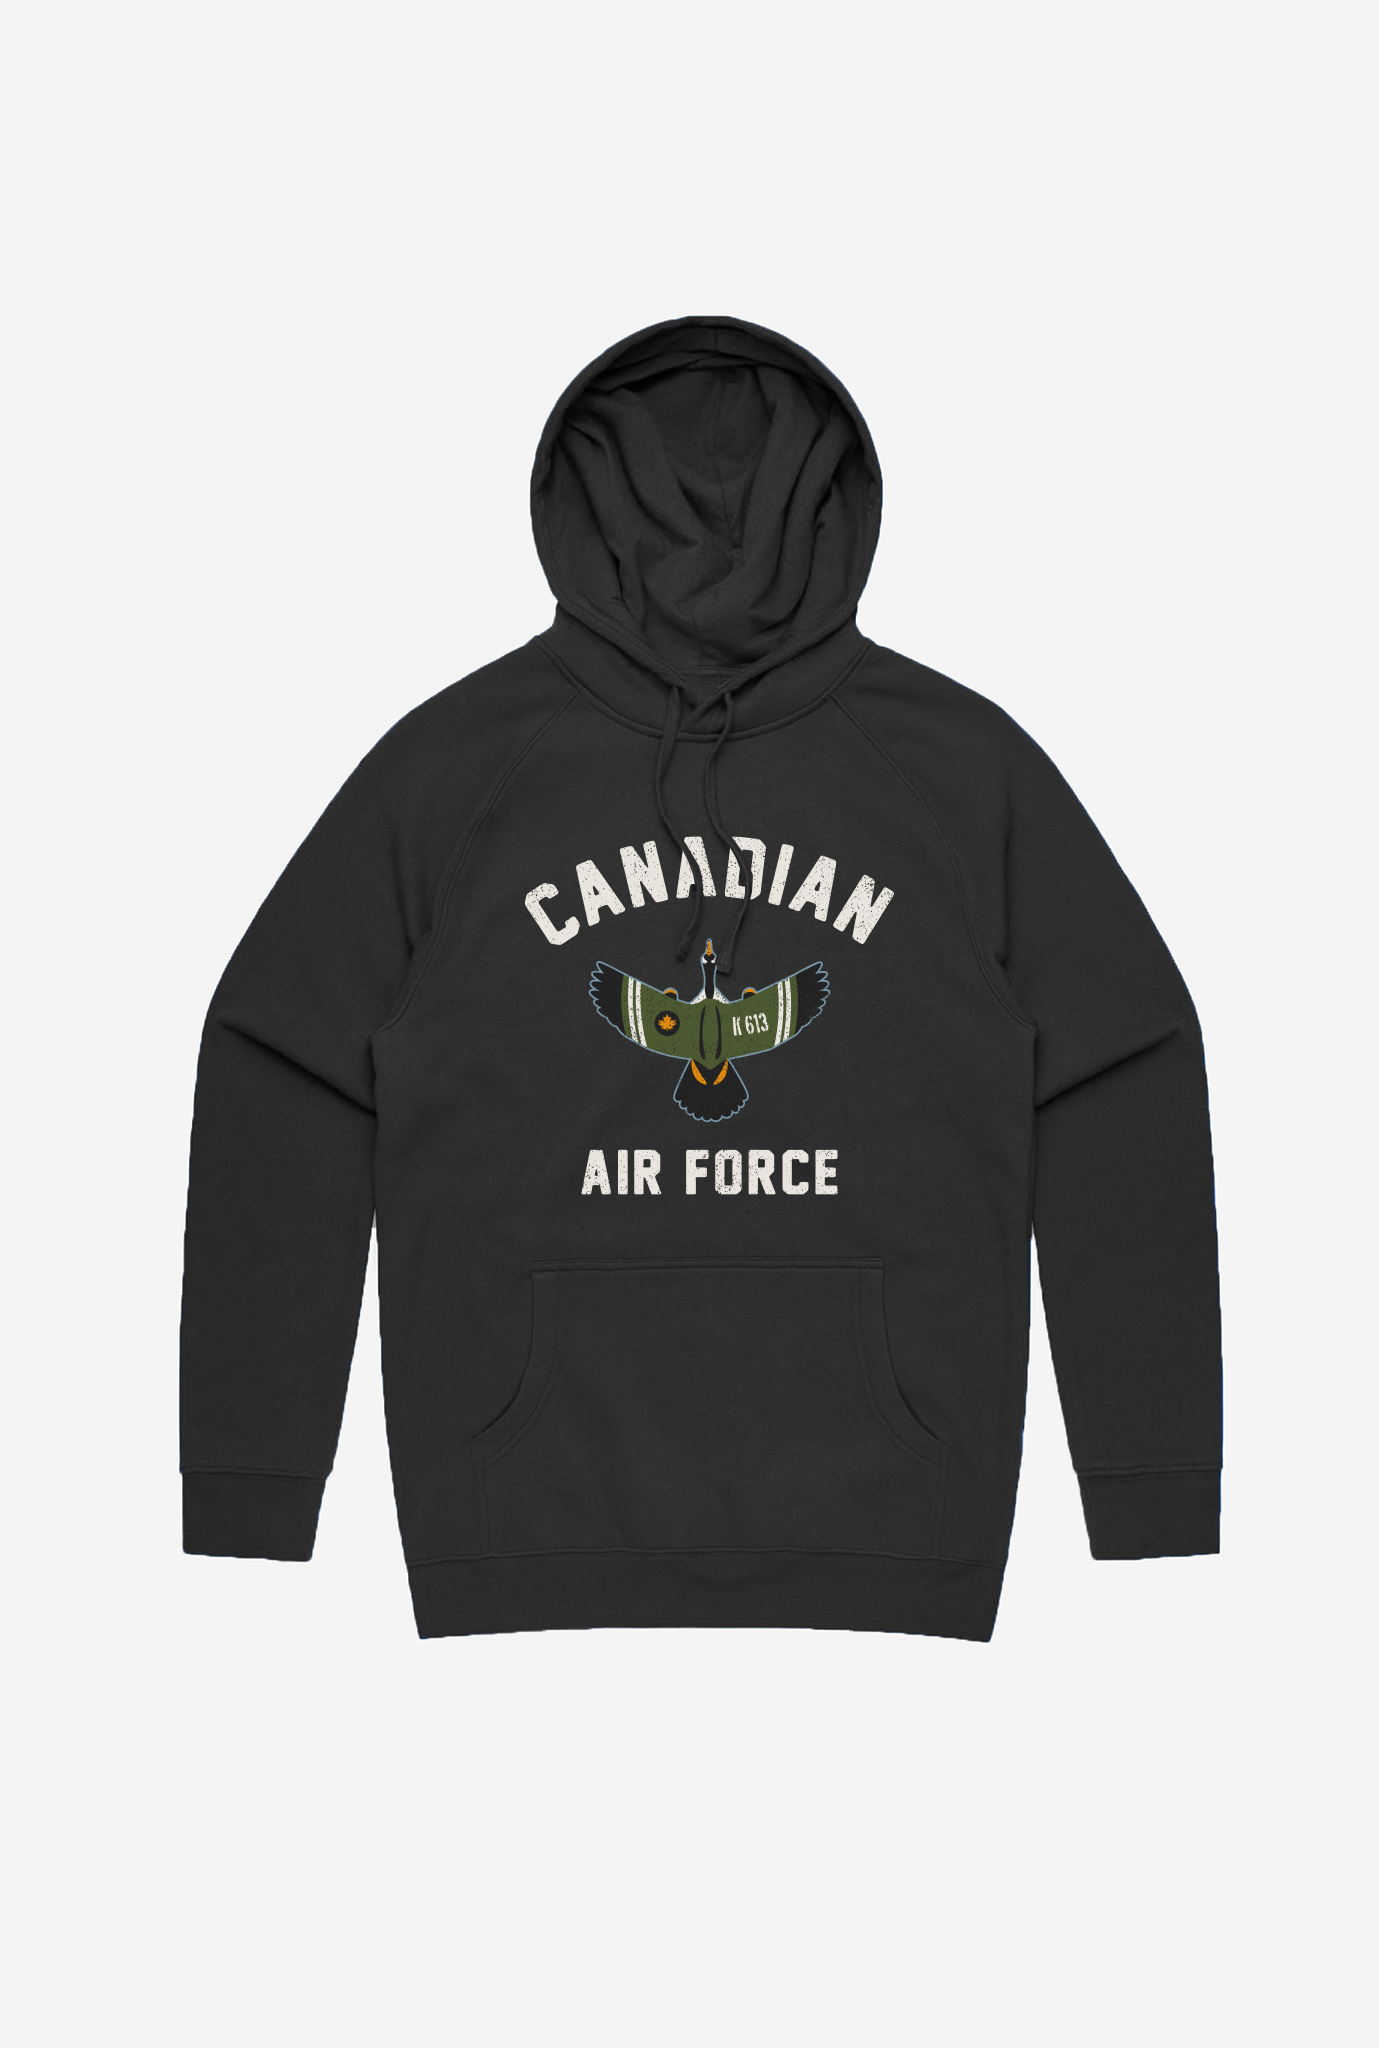 Canadian Air Force Hoodie - Black